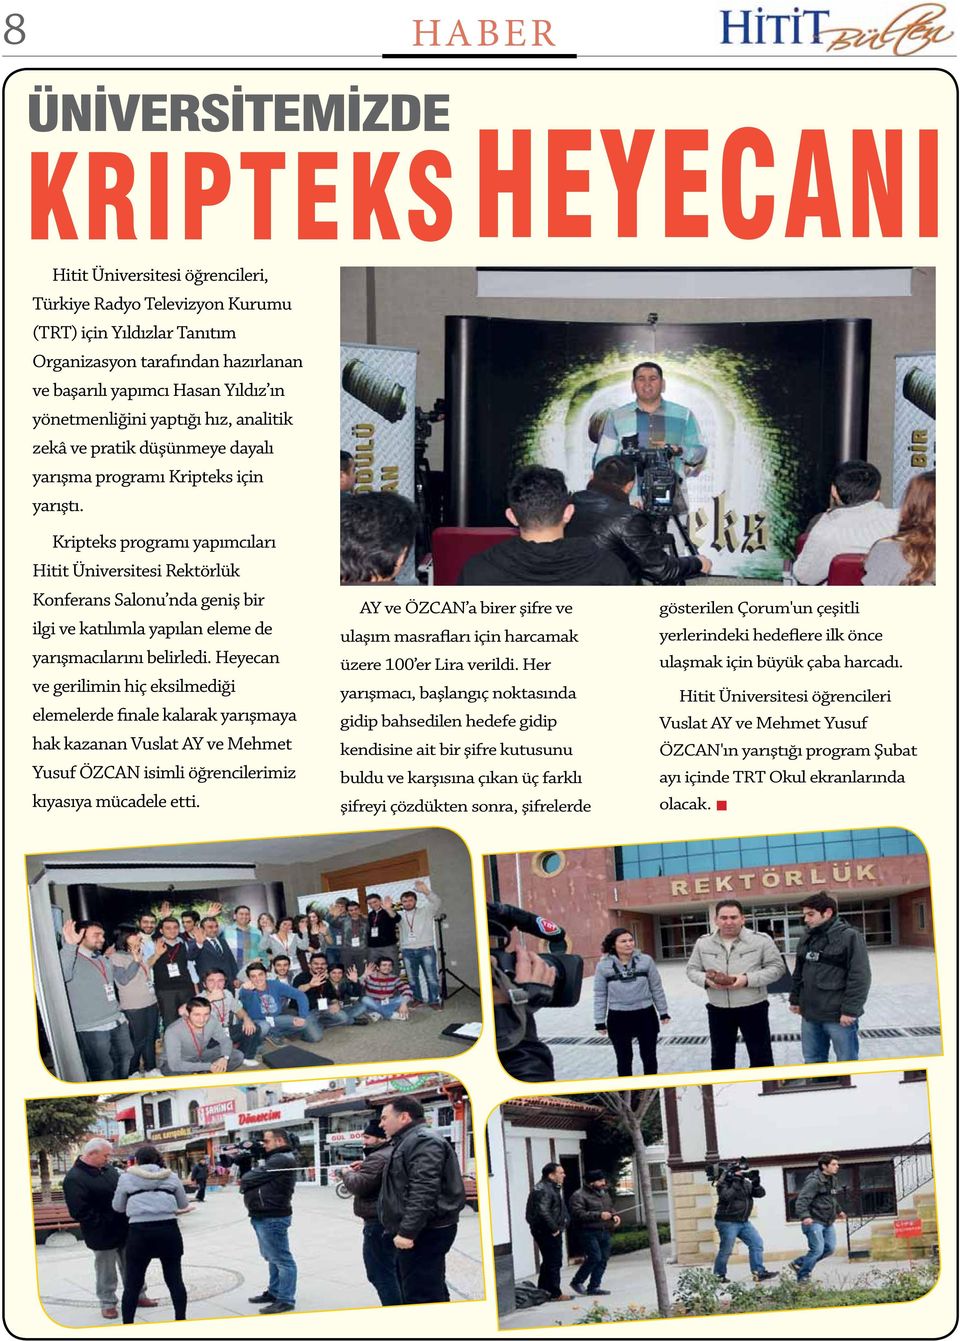 Kripteks programı yapımcıları Hitit Üniversitesi Rektörlük Konferans Salonu nda geniş bir ilgi ve katılımla yapılan eleme de yarışmacılarını belirledi.